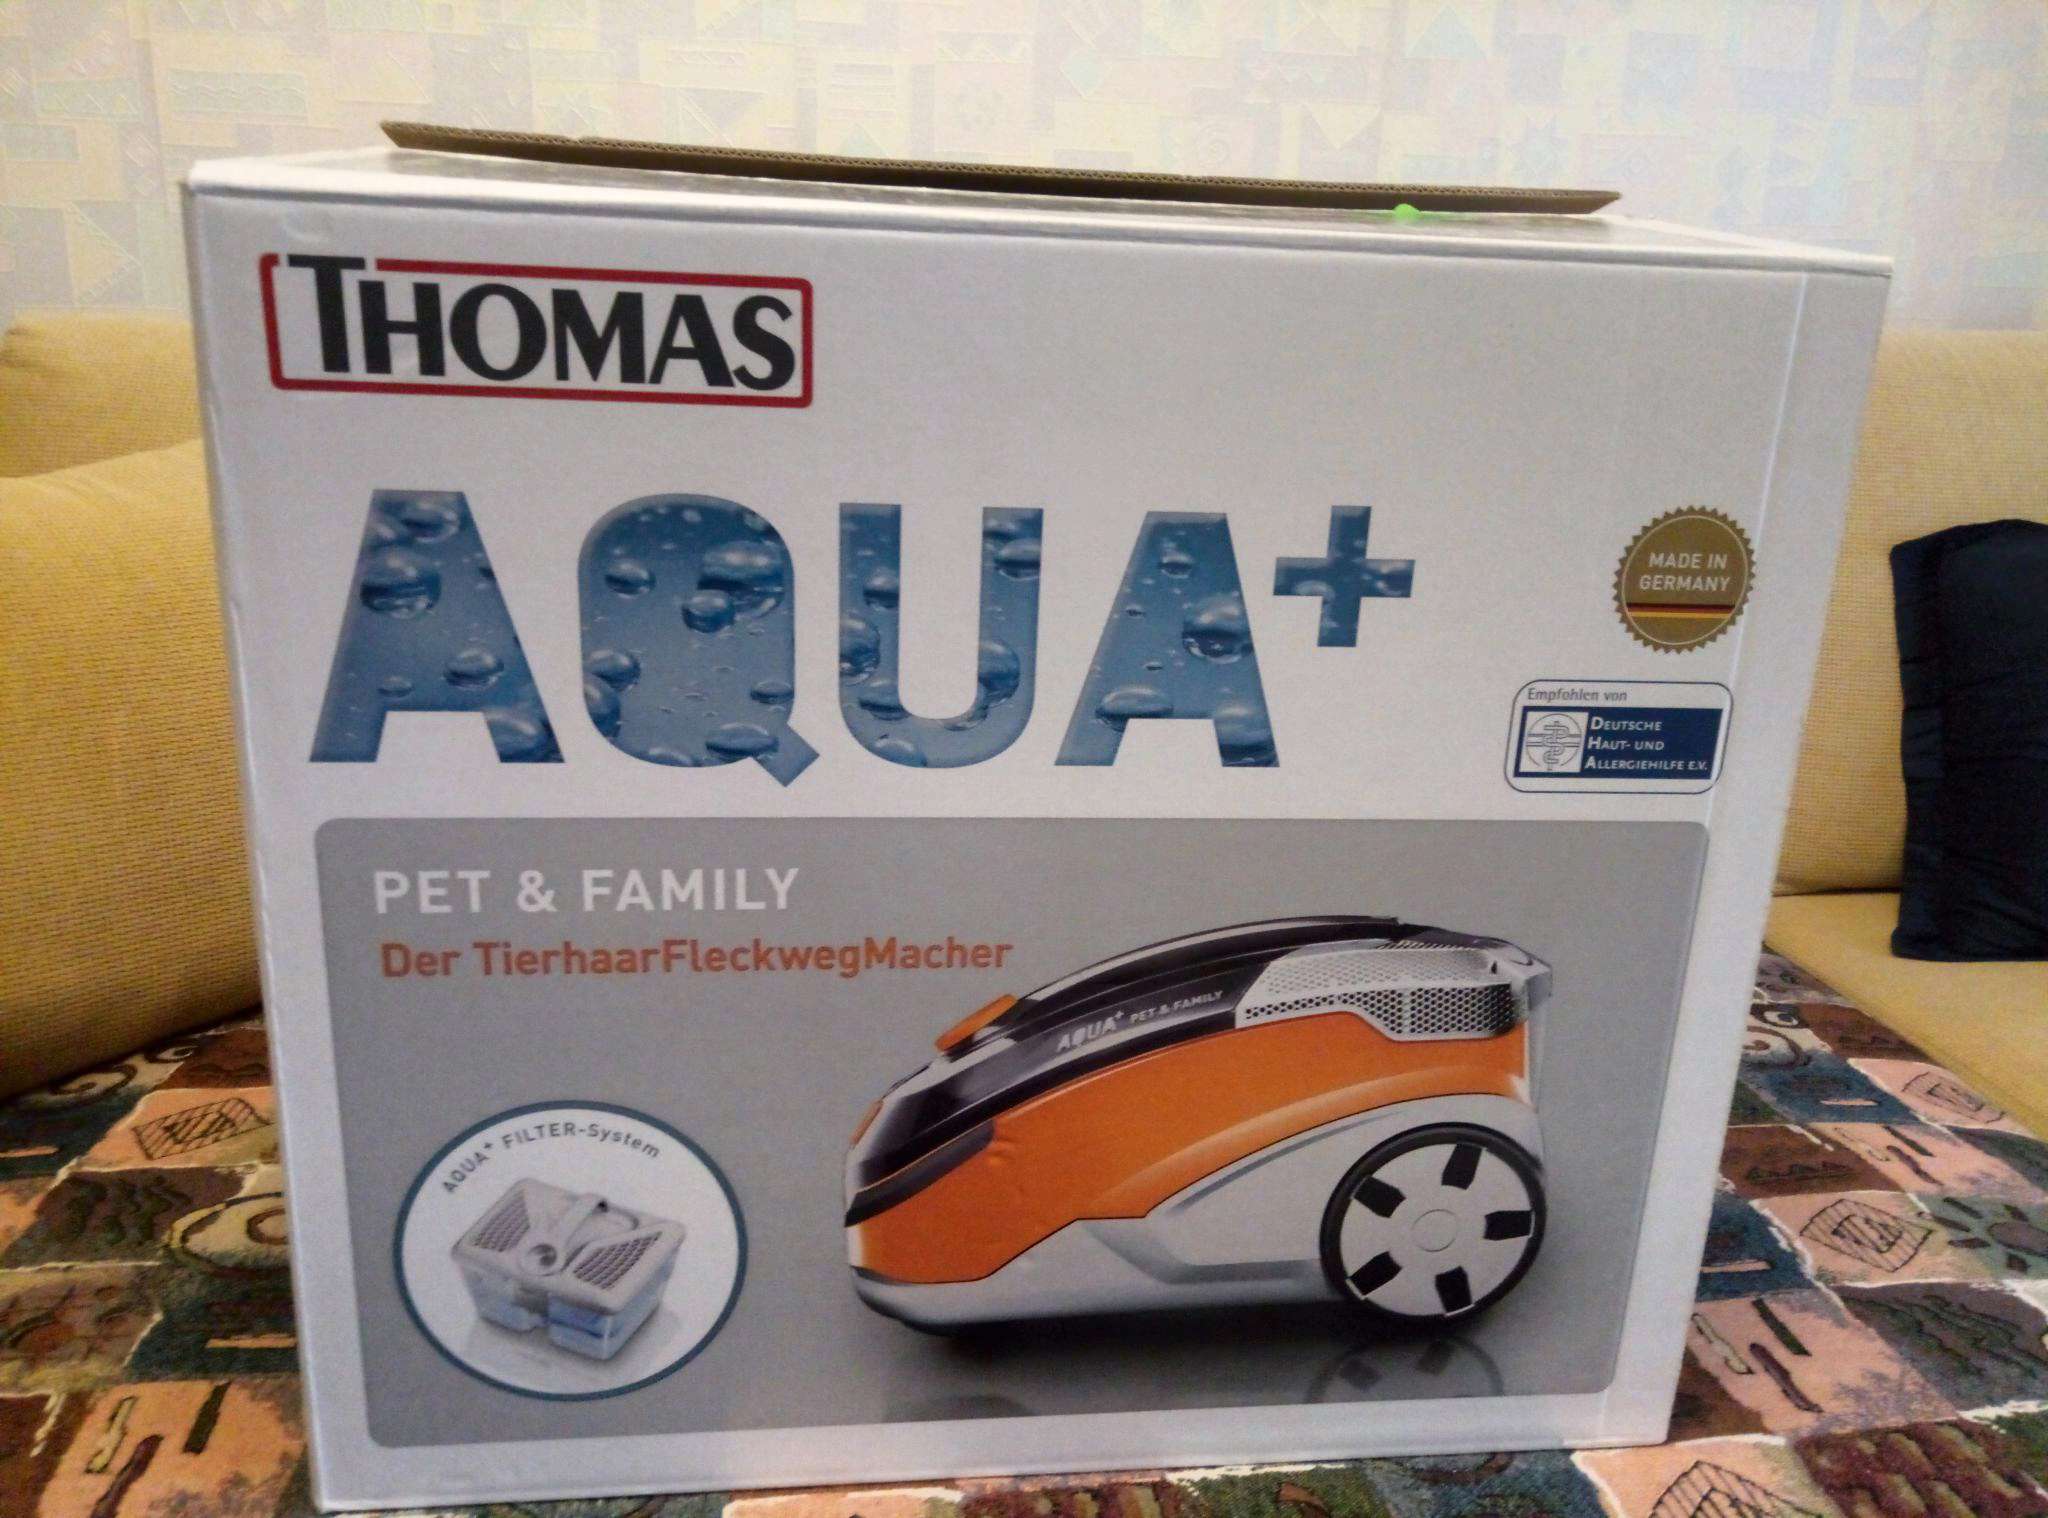 Пылесос aqua pet family. Пылесос Thomas Aqua Pet & Family. Пылесос Thomas Aqua Pet&Family parquet Pro. Моющий пылесос Thomas Pet Family Plus.